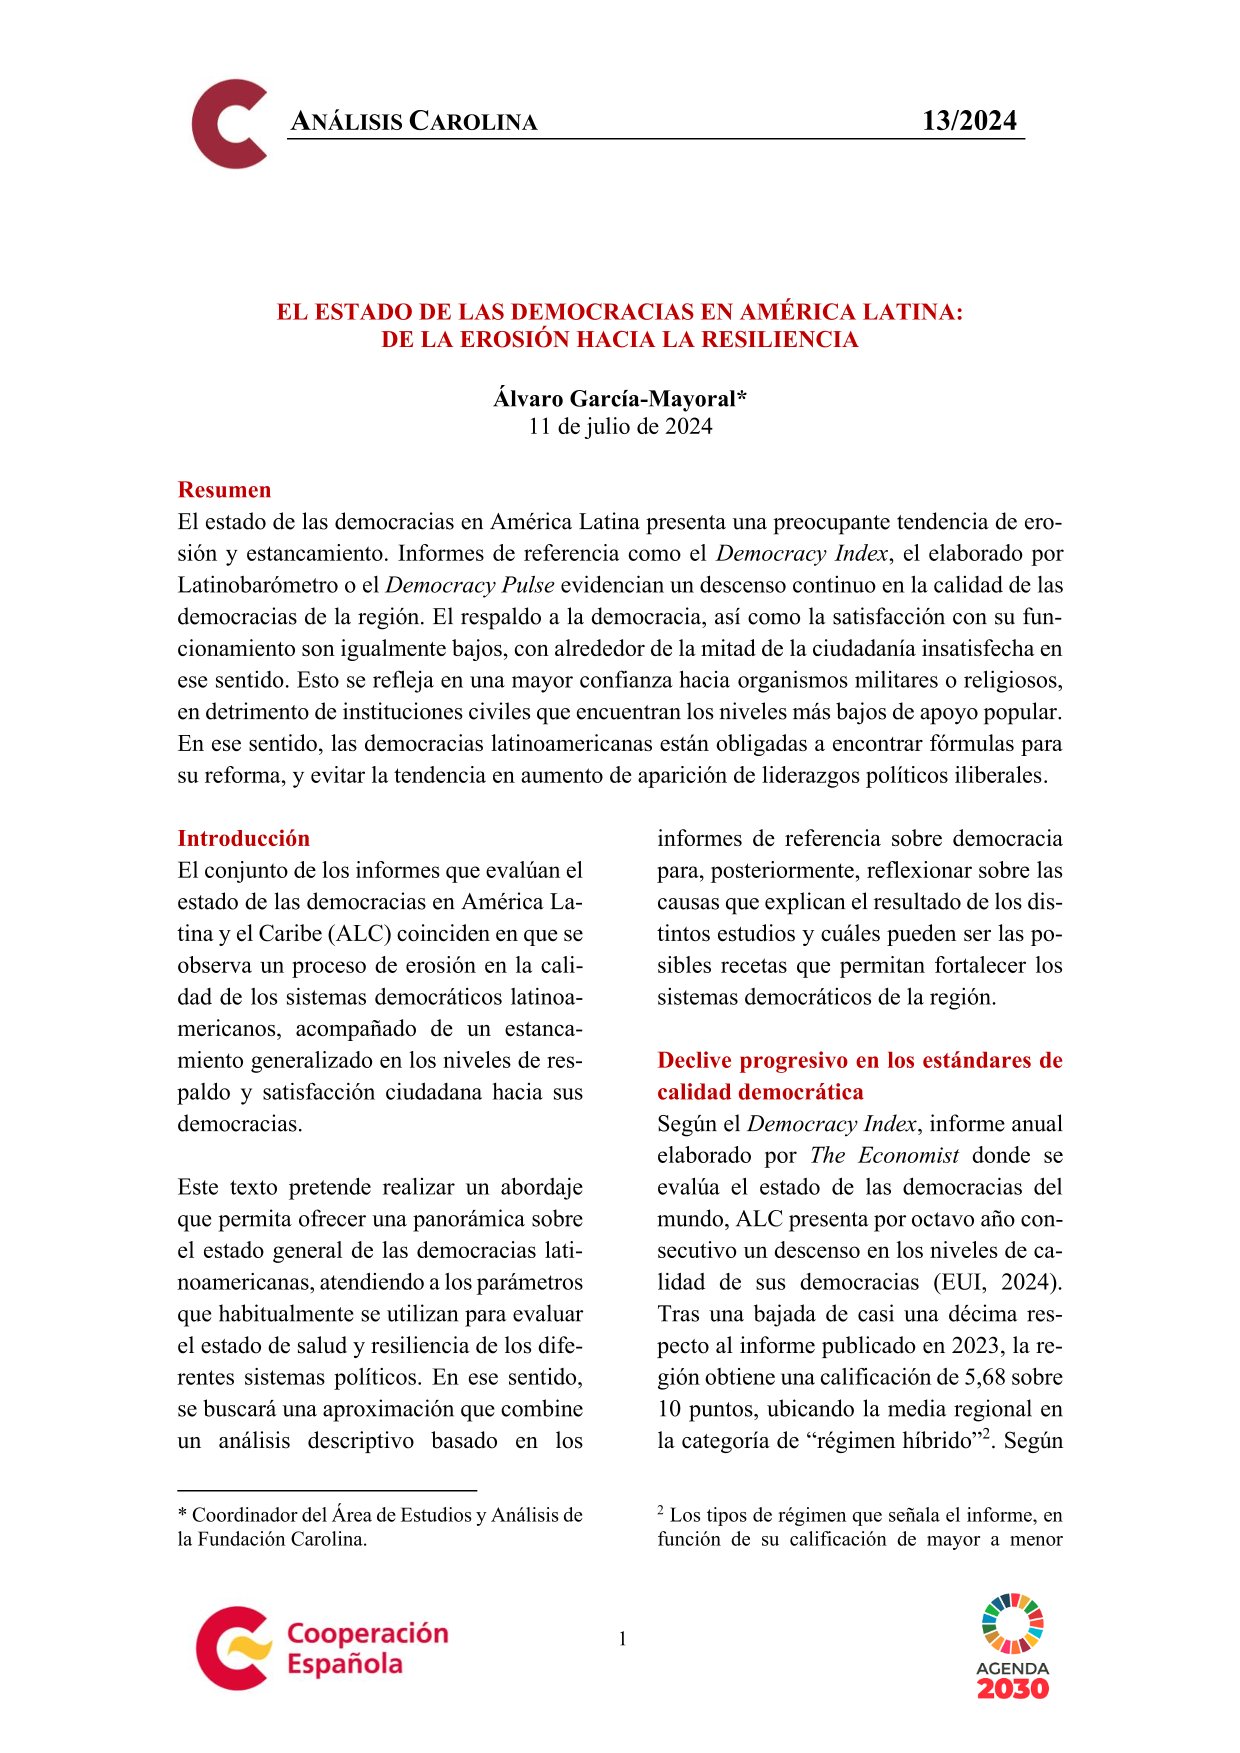 Estado de las democracias en América Latina, Fundación Carolina, 13/2024